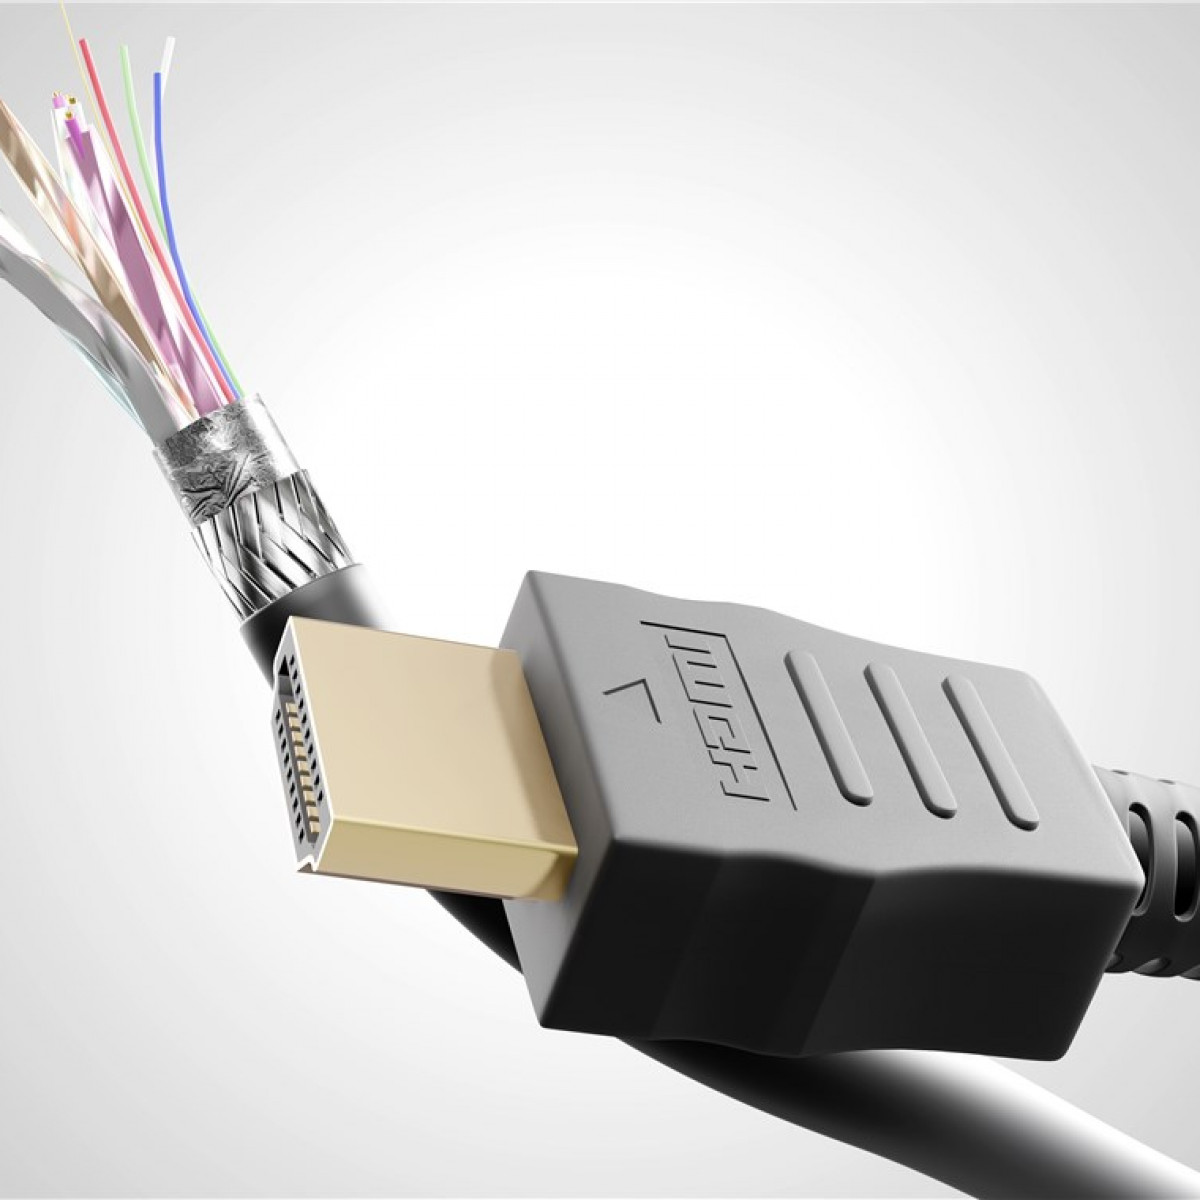 GOOBAY High-Speed-HDMI™-Kabel mit HDMI Kabel Ethernet